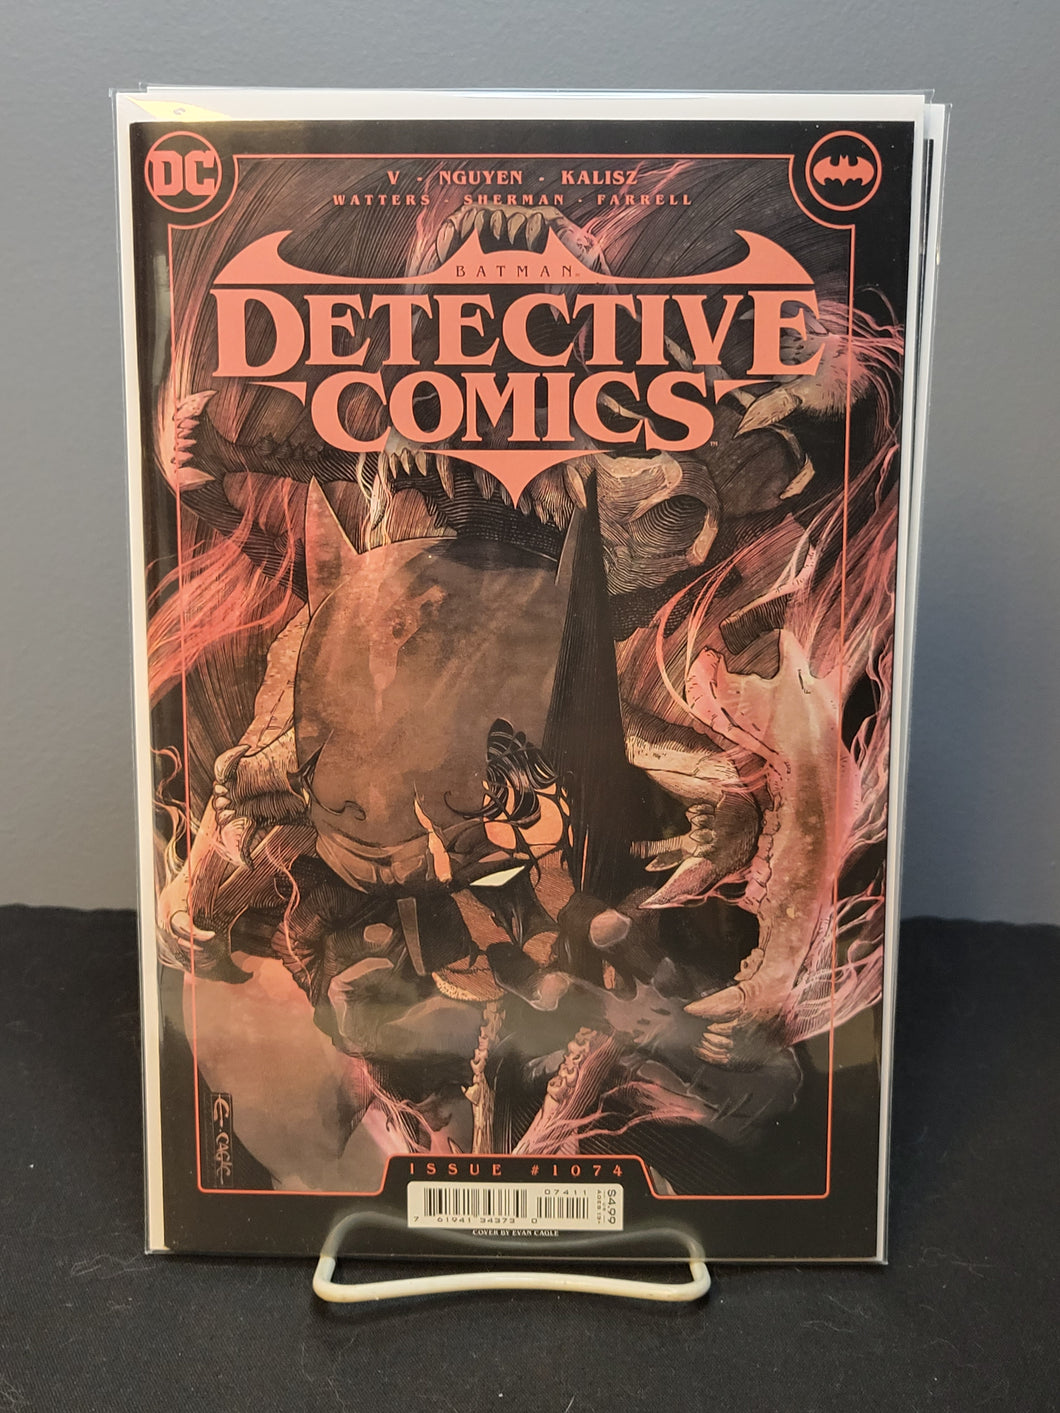 Detective Comics #1074